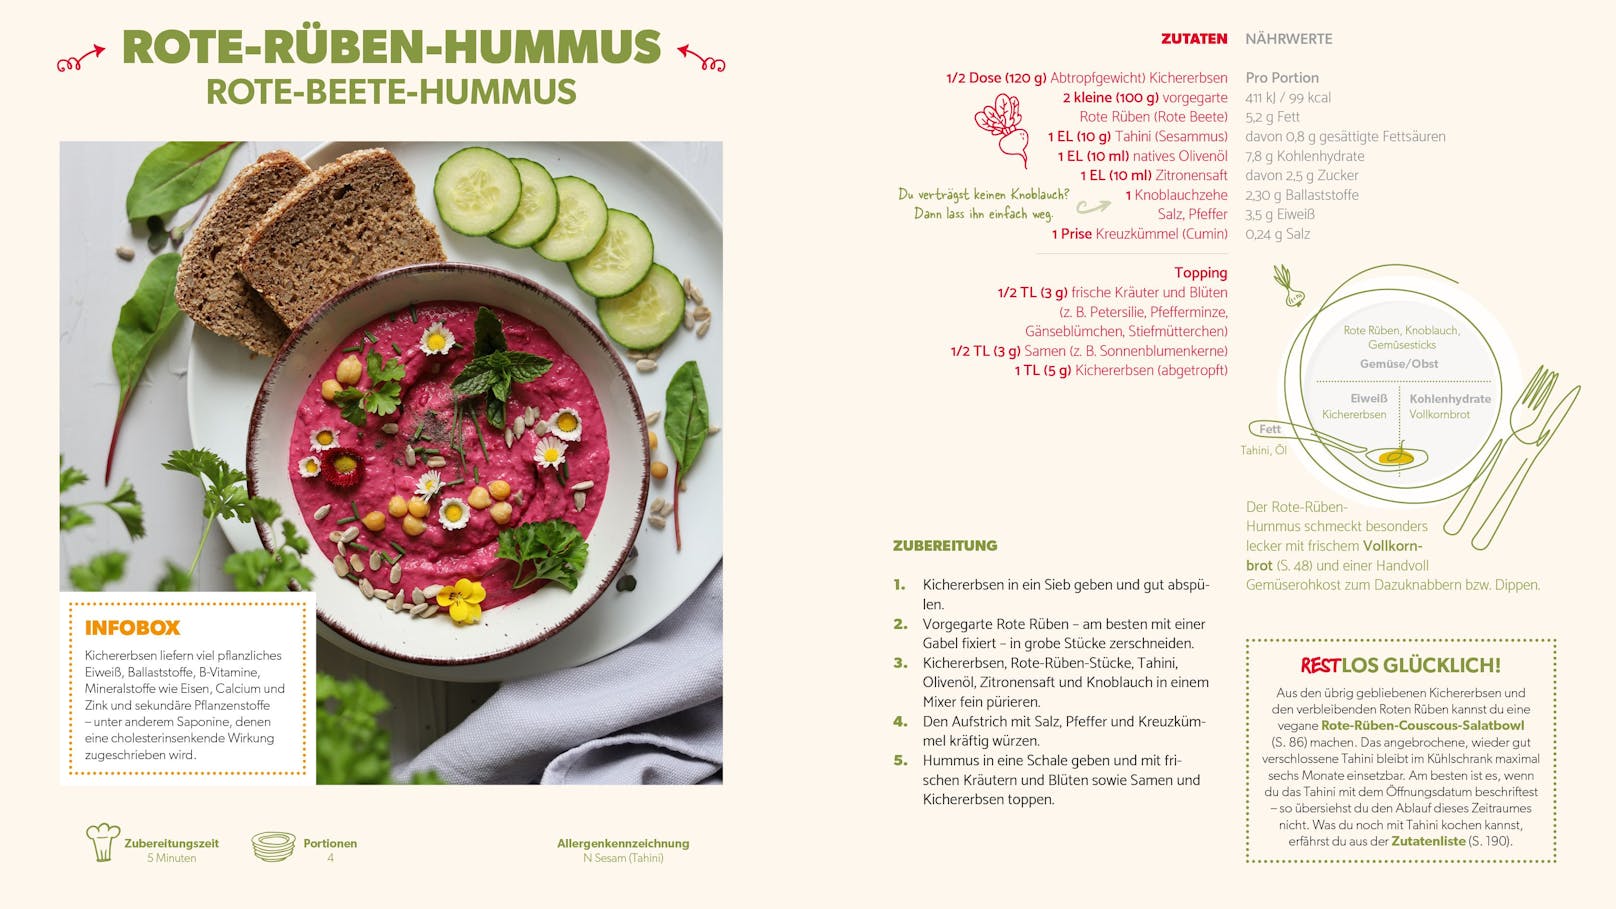 Rote-Rüben-Hummus